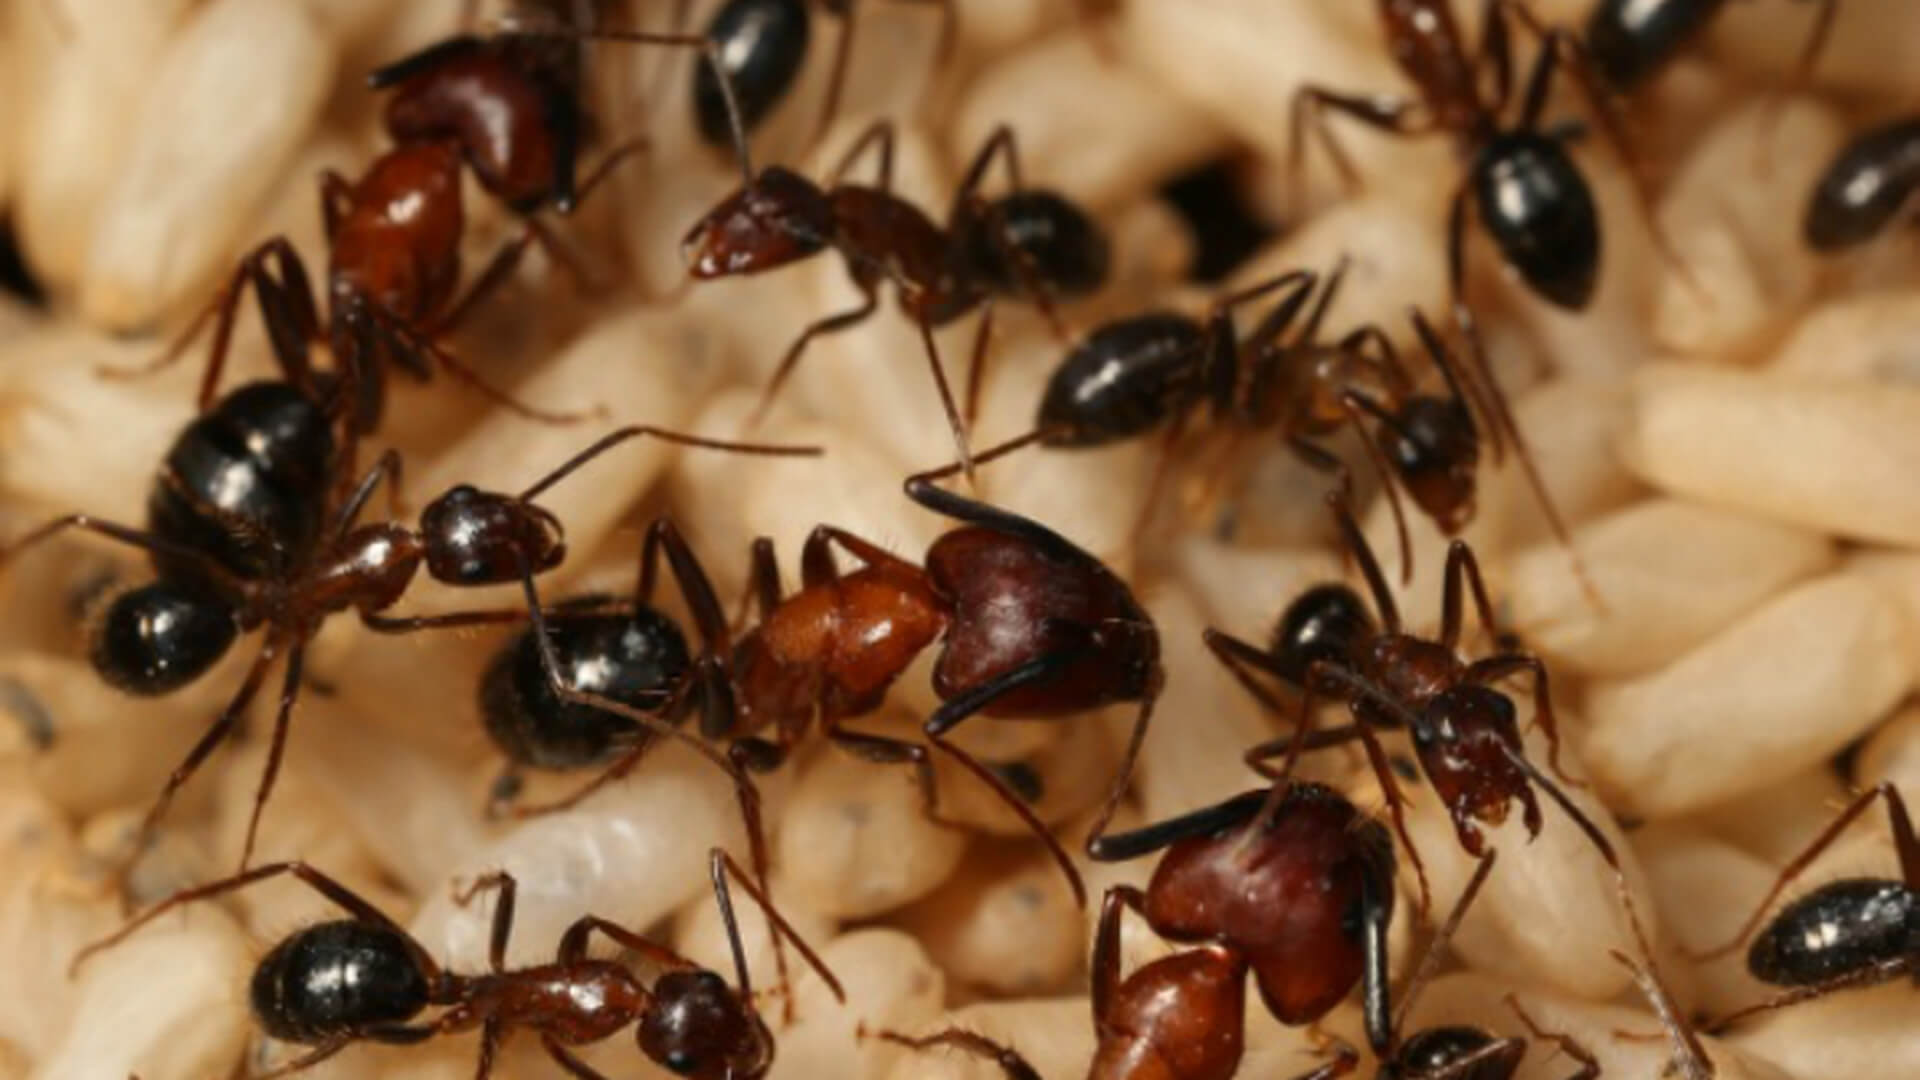 कॉलोनी चींटियों की यादें हैं, जो खुद को नहीं है, चींटियों